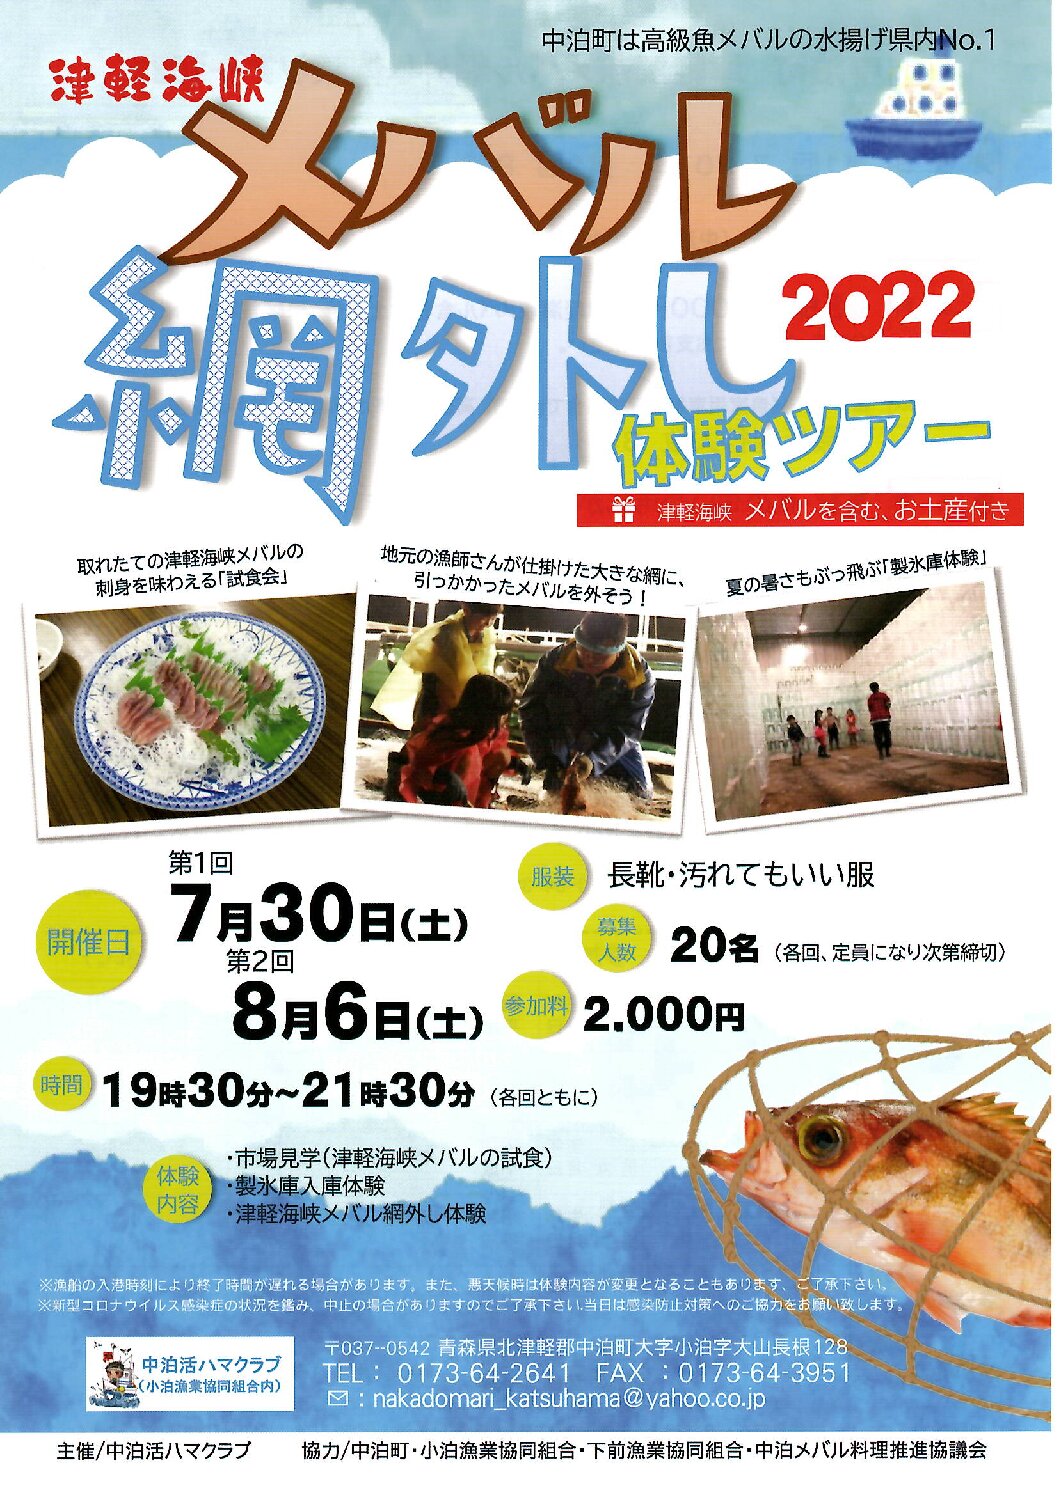 Featured image for “津軽海峡メバル網外し体験ツアー2022”